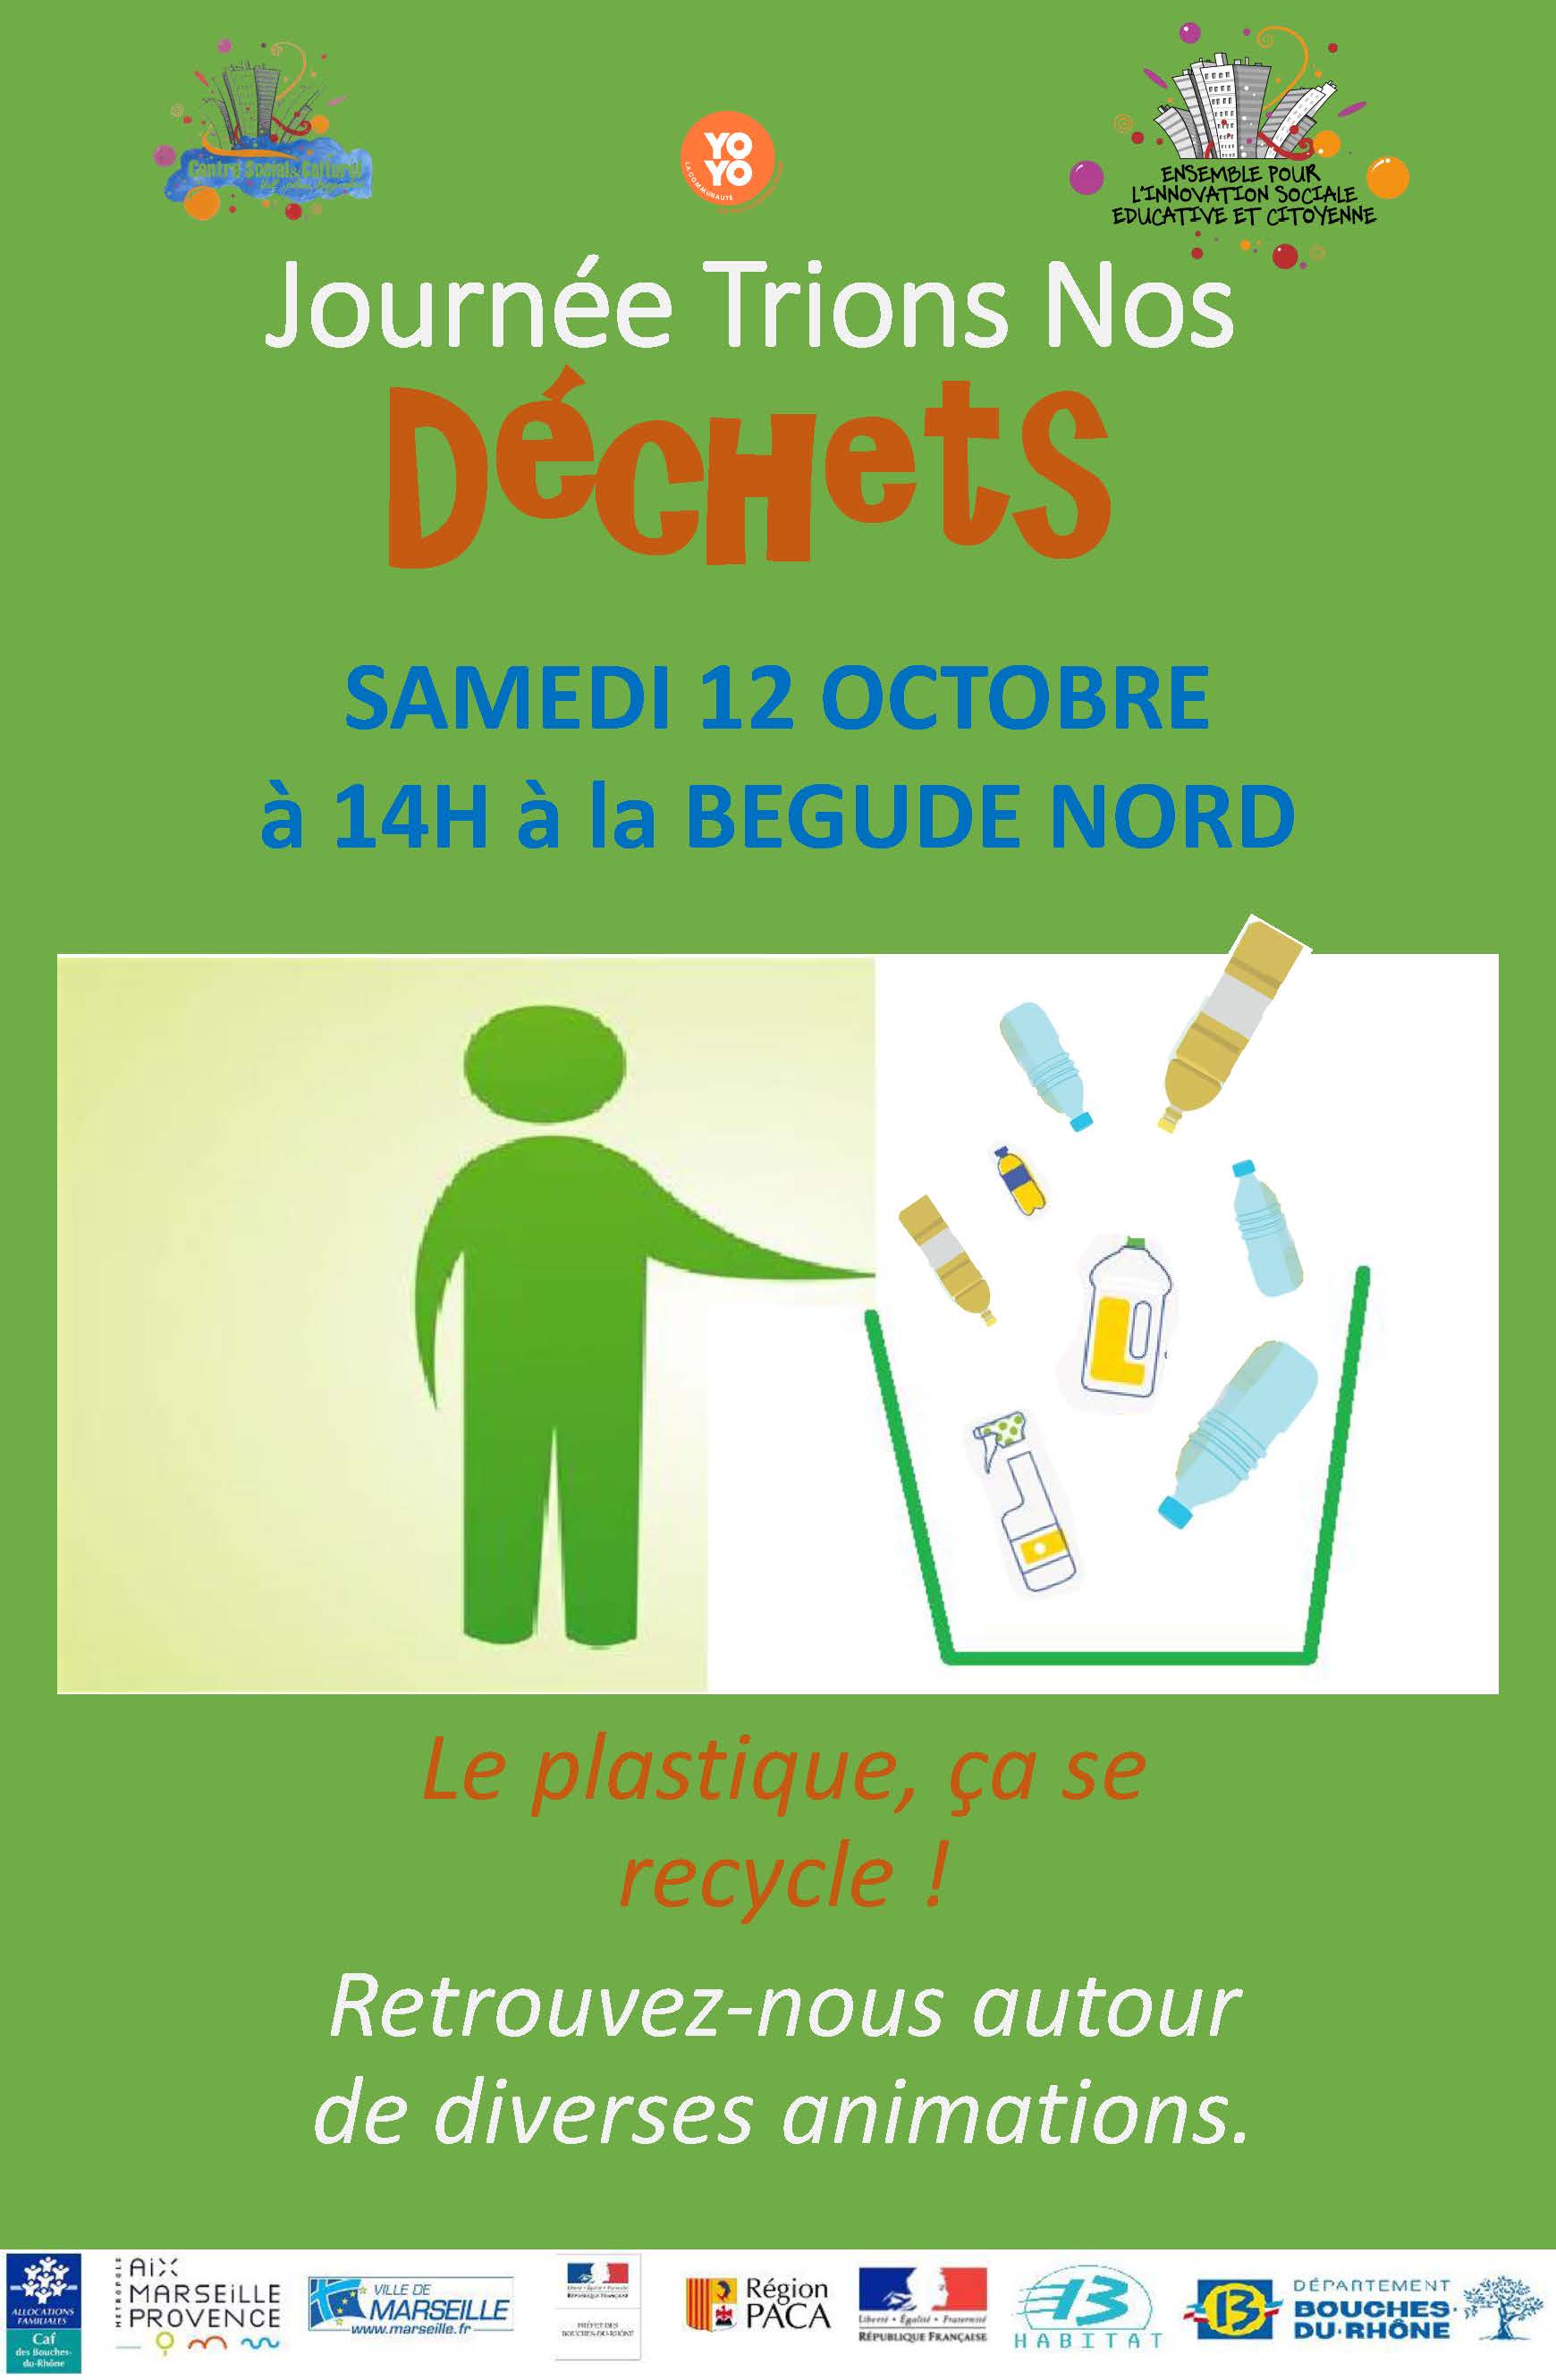 Journée Trions nos déchets, samedi 12 octobre - Bégude Nord